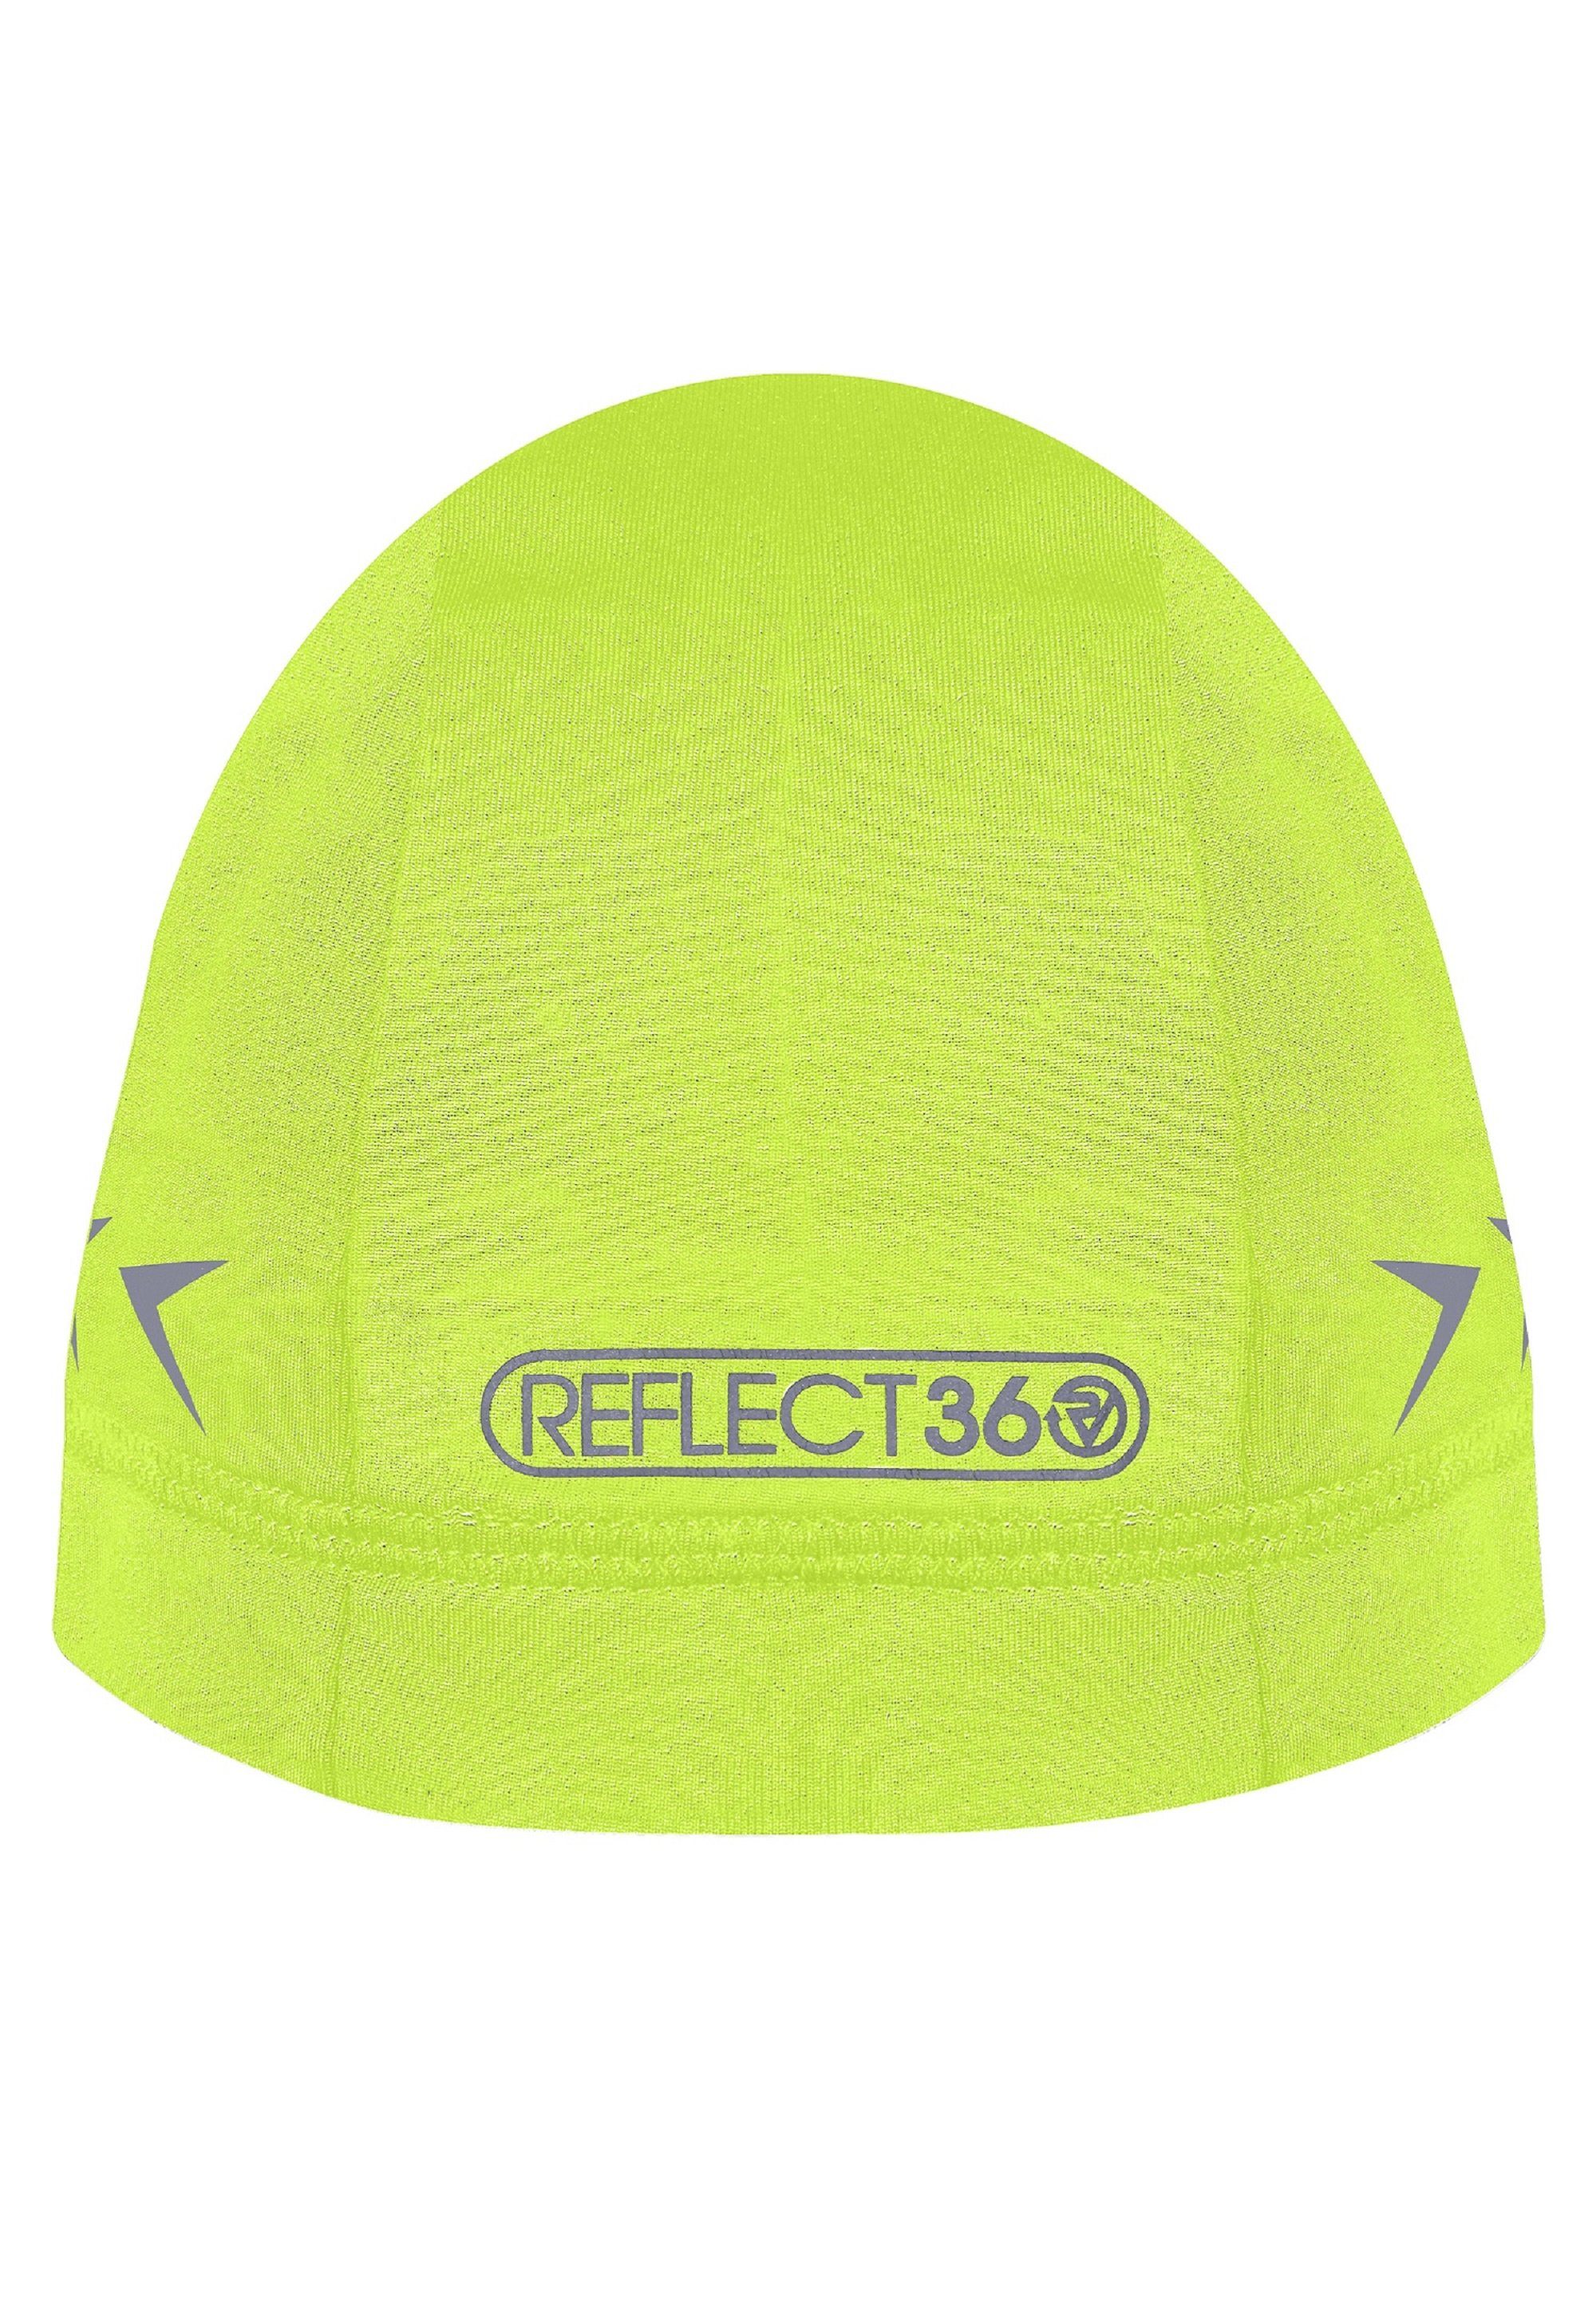 ProViz REFLECT360 yellow reflective Beanie